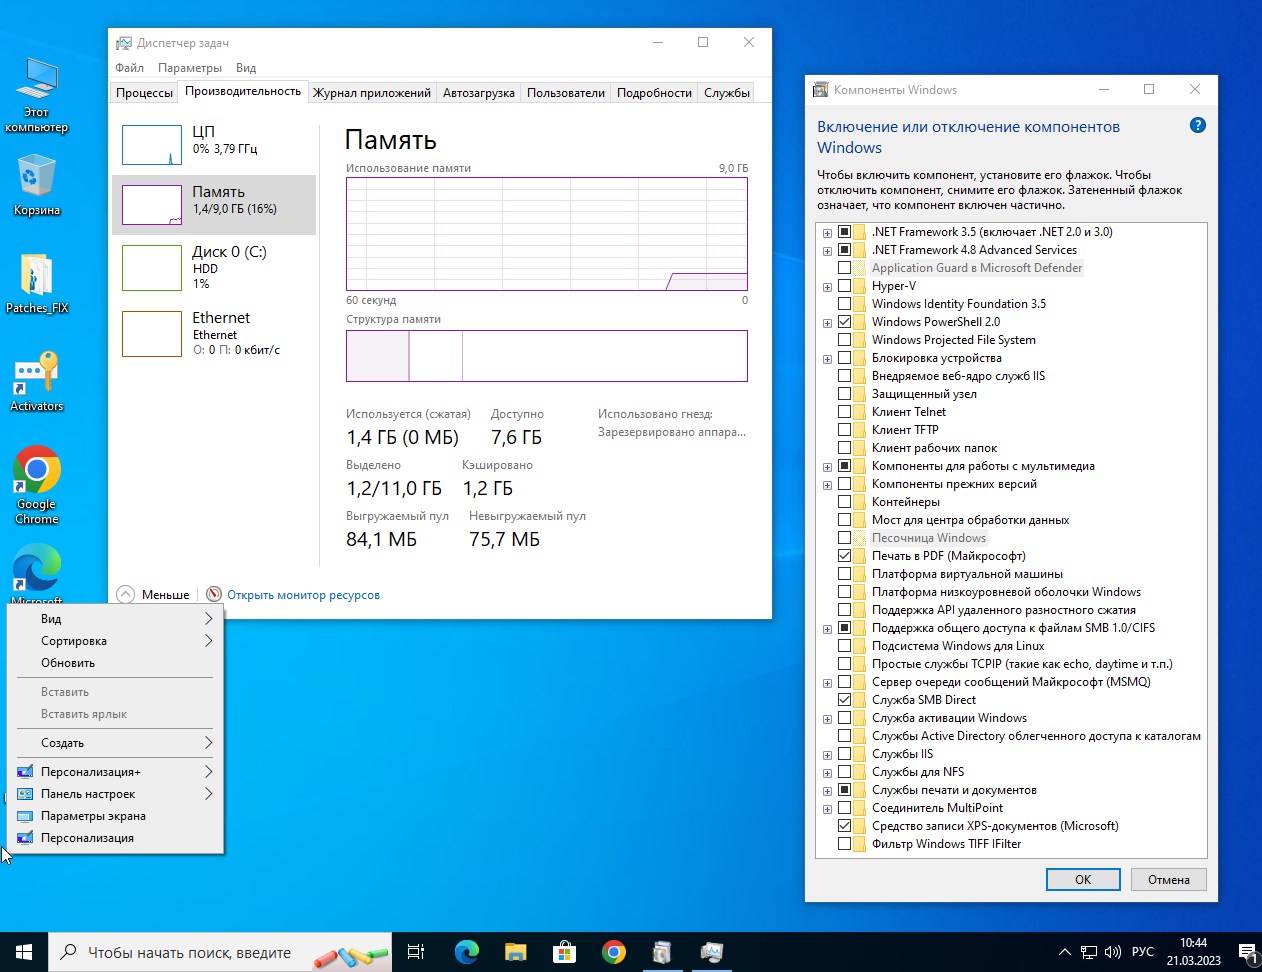 Скачать Windows 10 Lite x64 Pro 22H2 Build 19045 на Русском для SSD бесплатно без торрент